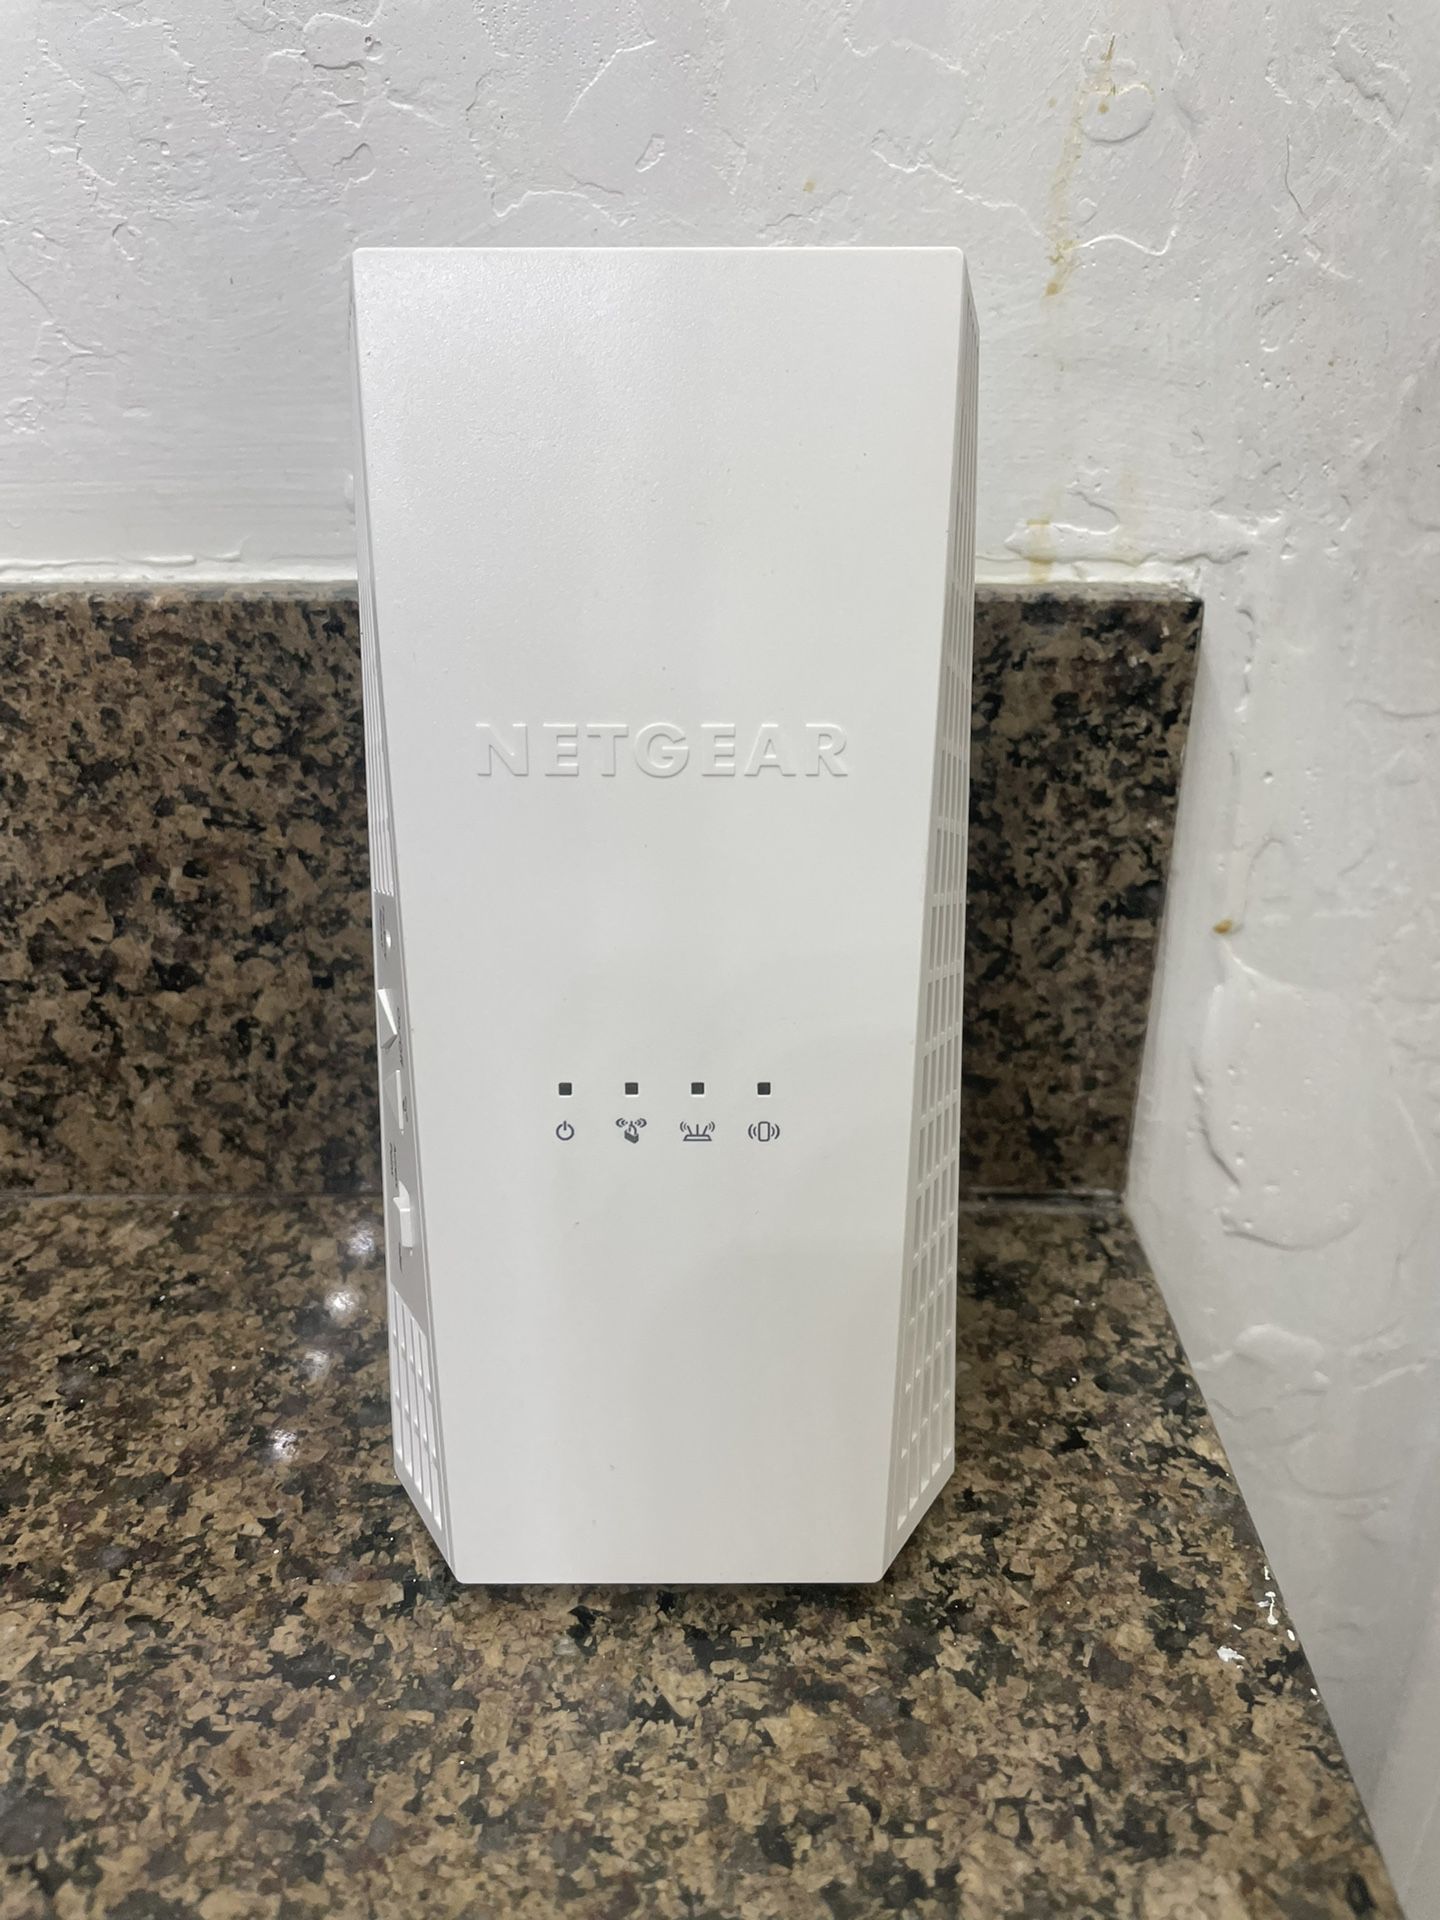 NetGear WiFi Extender - Never Used